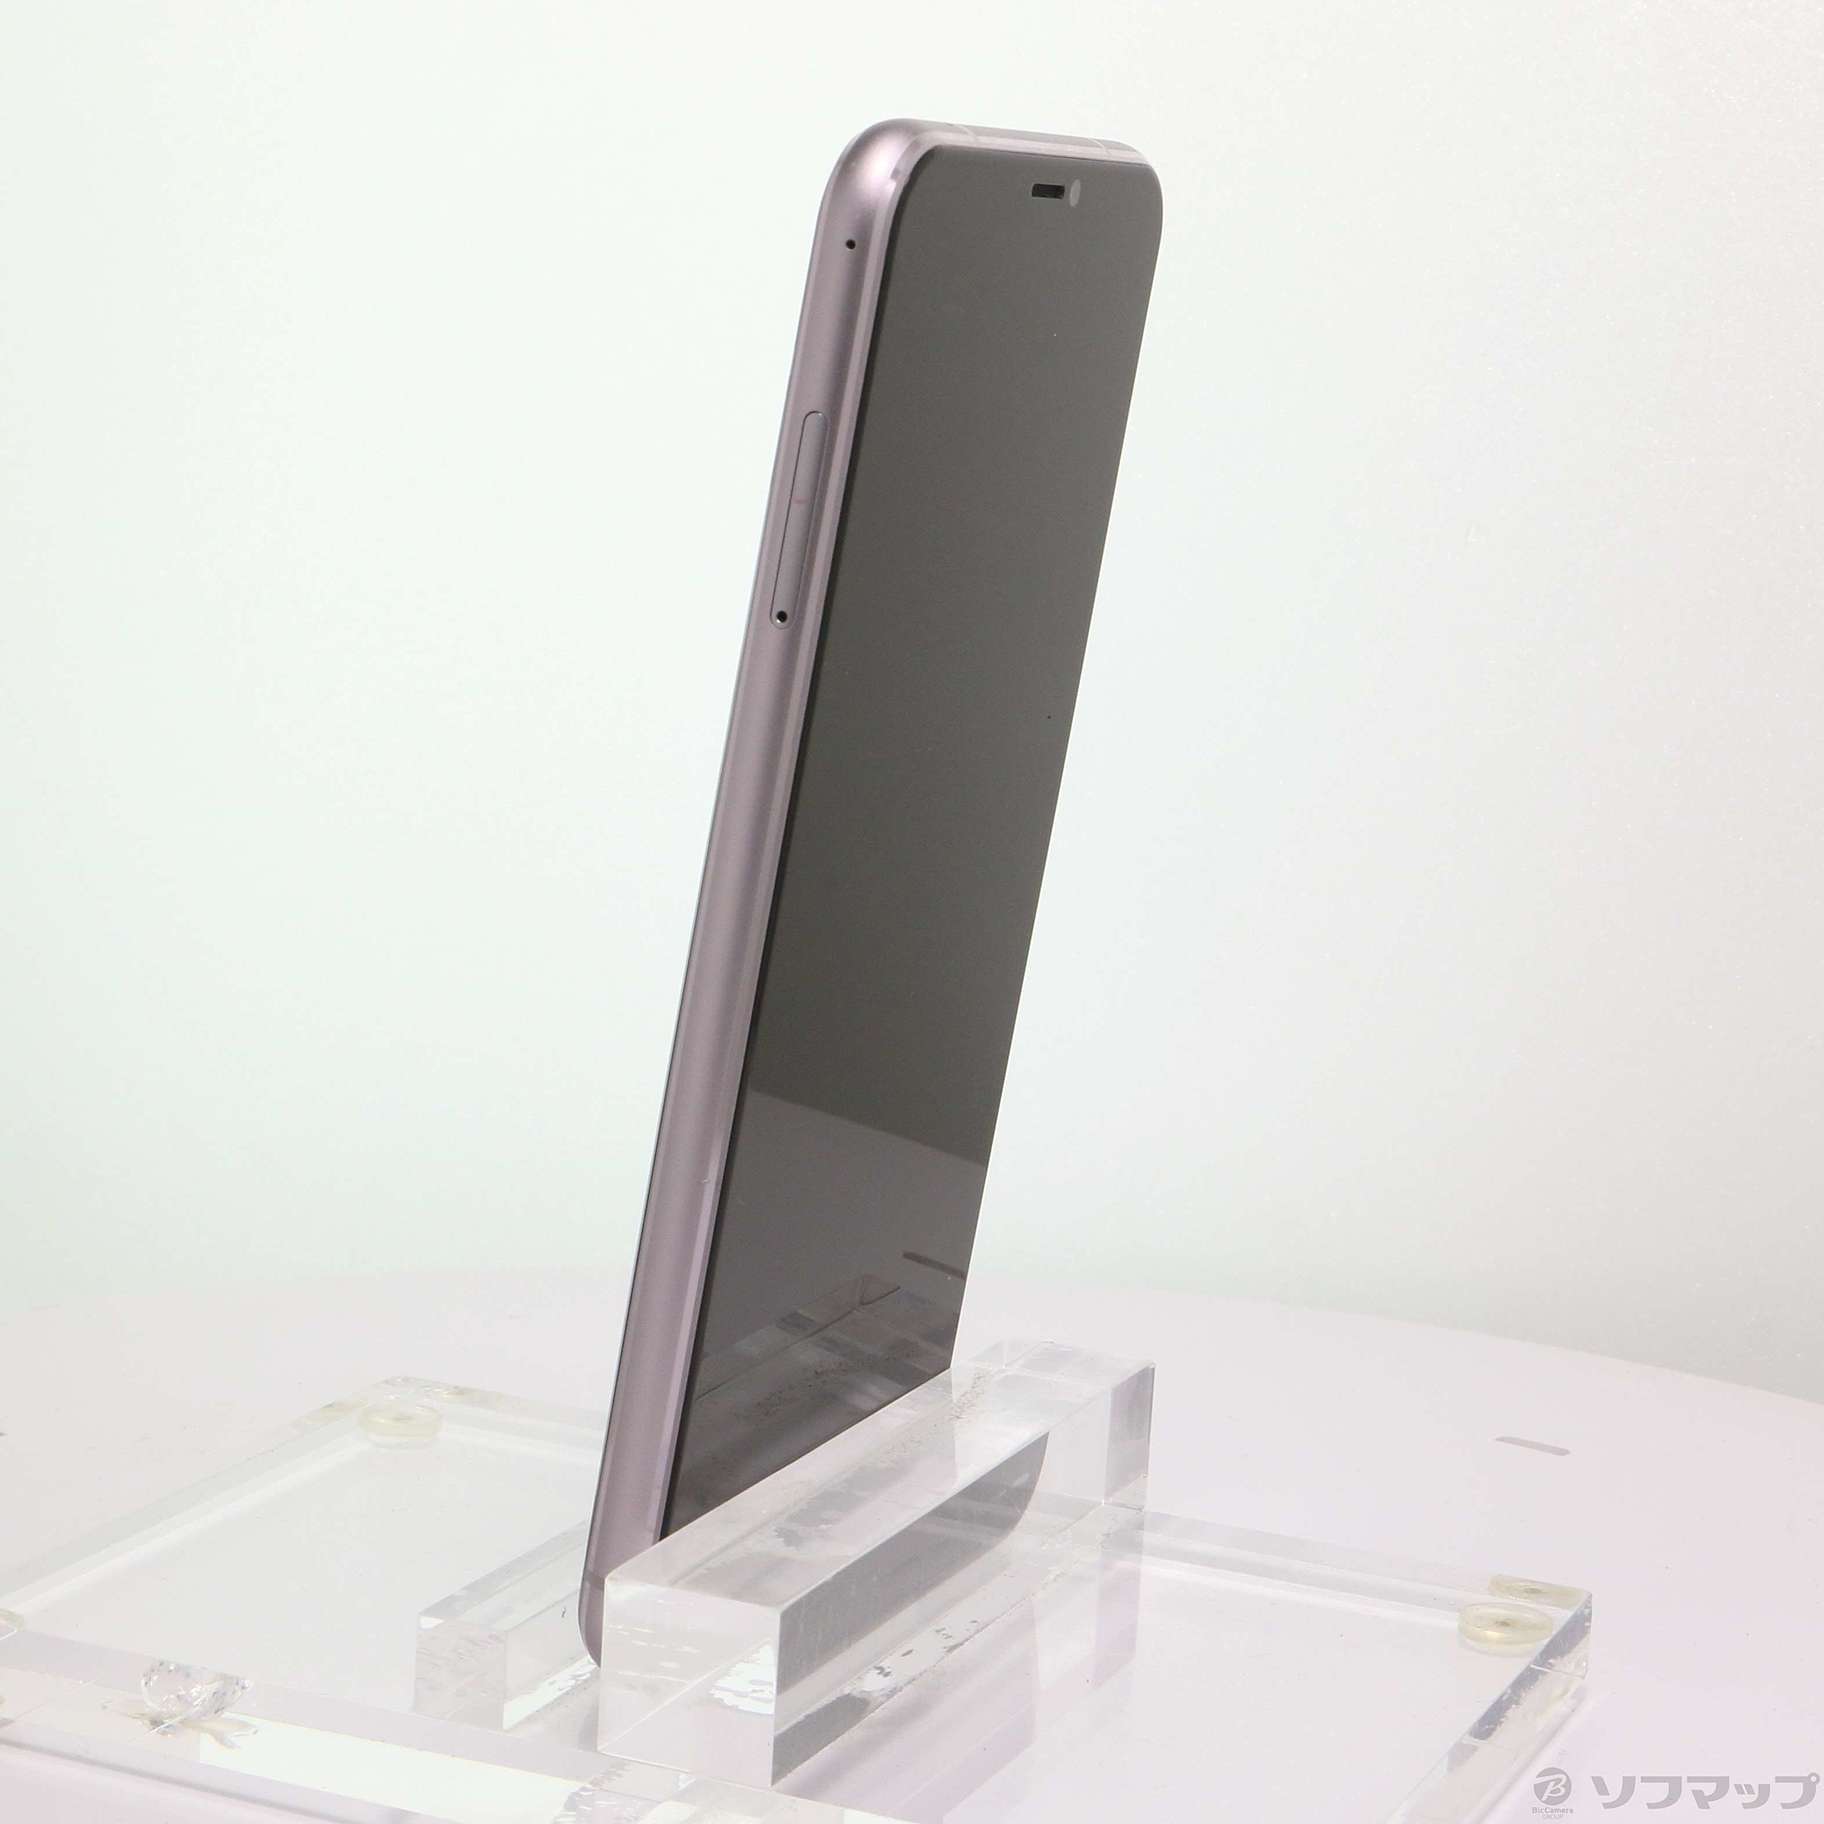 中古】ZenFone 5 64GB スペースシルバー ZE620KL-SL64S6 SIMフリー 